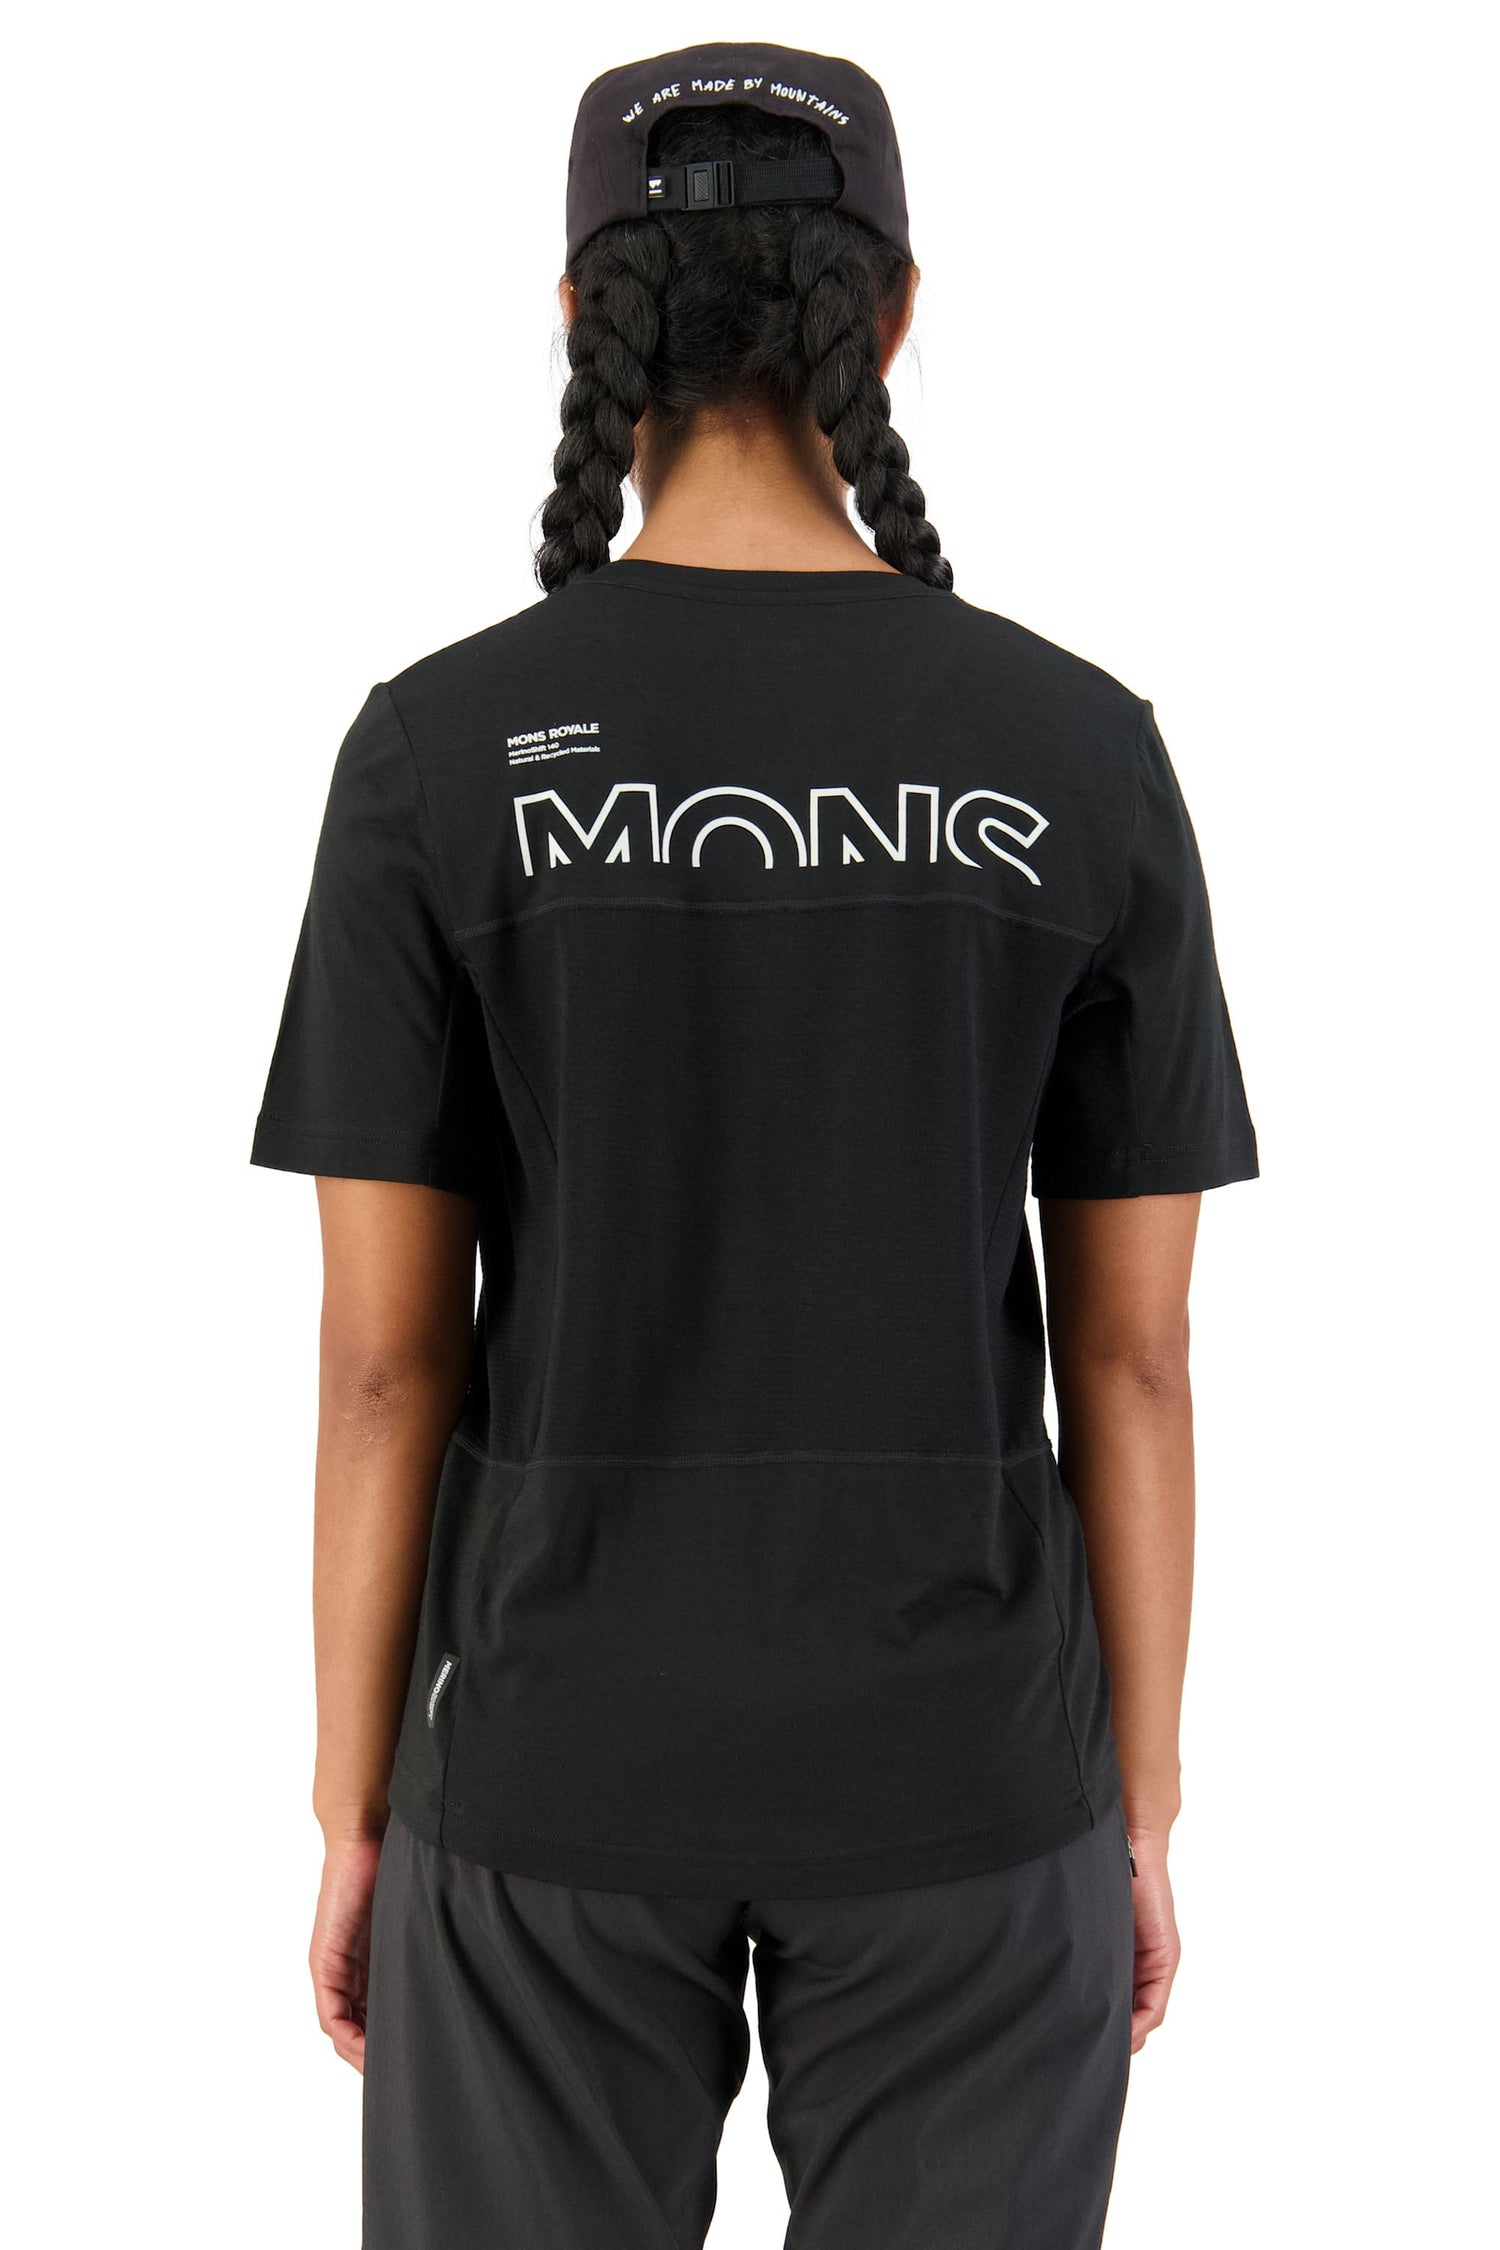 Mons Royale W's Tarn Merino Shift Tee - Merino Wool Black 22 Shirt